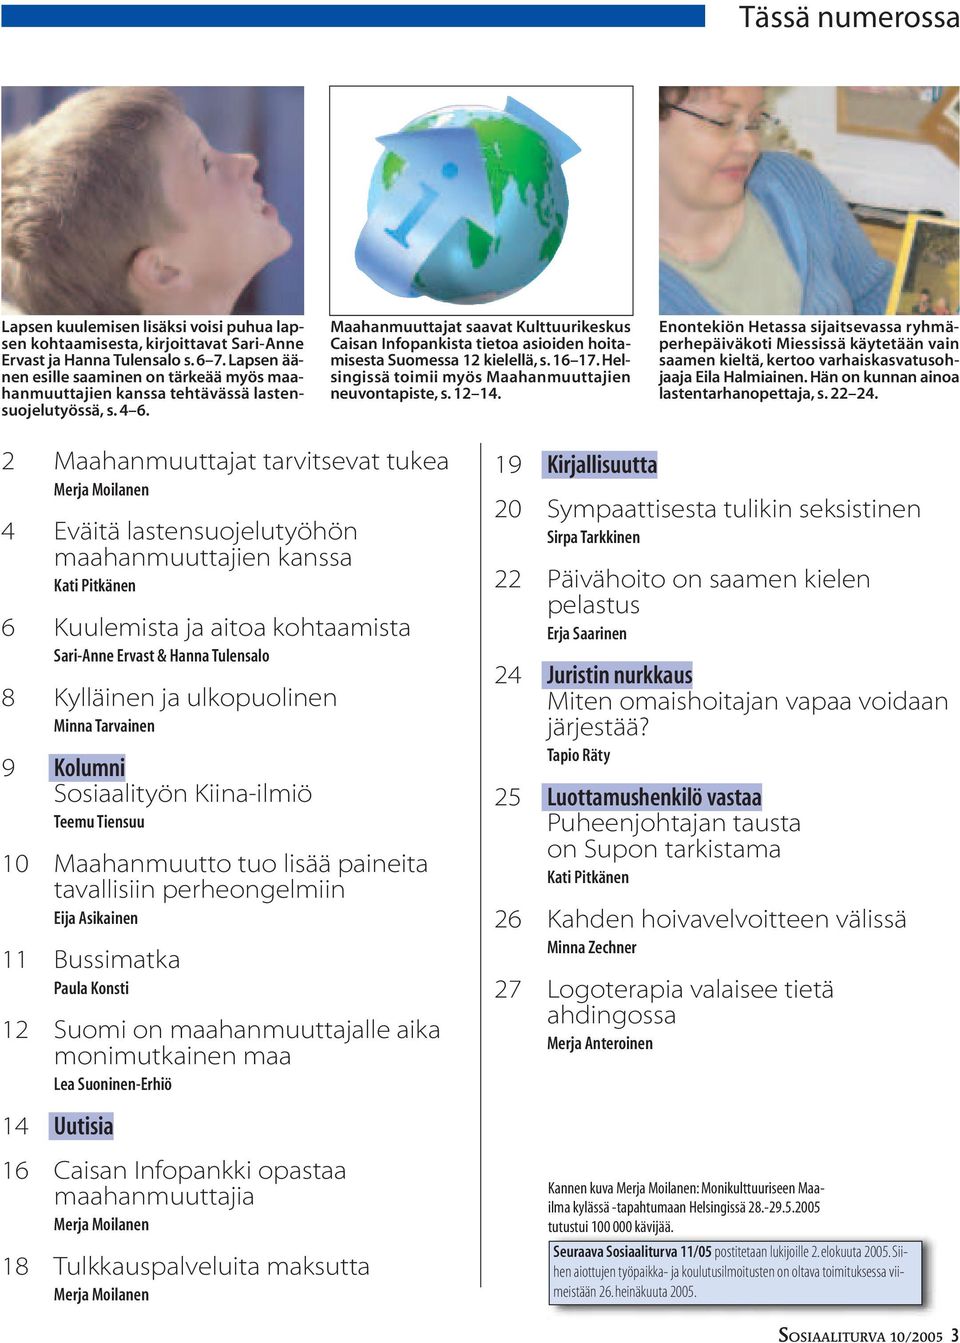 Maahanmuuttajat saavat Kulttuurikeskus Caisan Infopankista tietoa asioiden hoitamisesta Suomessa 12 kielellä, s. 16 17. Helsingissä toimii myös Maahanmuuttajien neuvontapiste, s. 12 14.